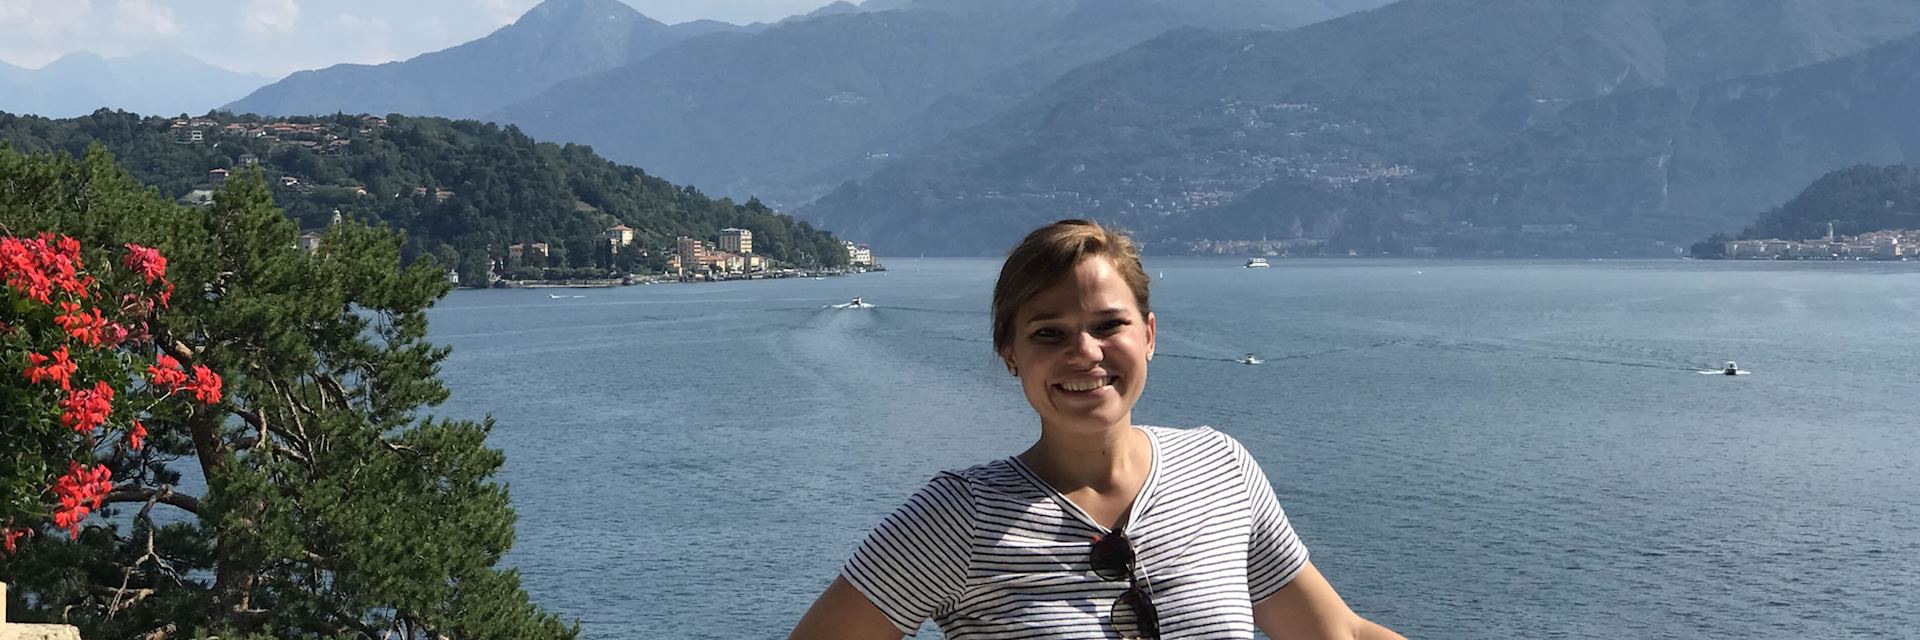 Elizabeth at Lake Como